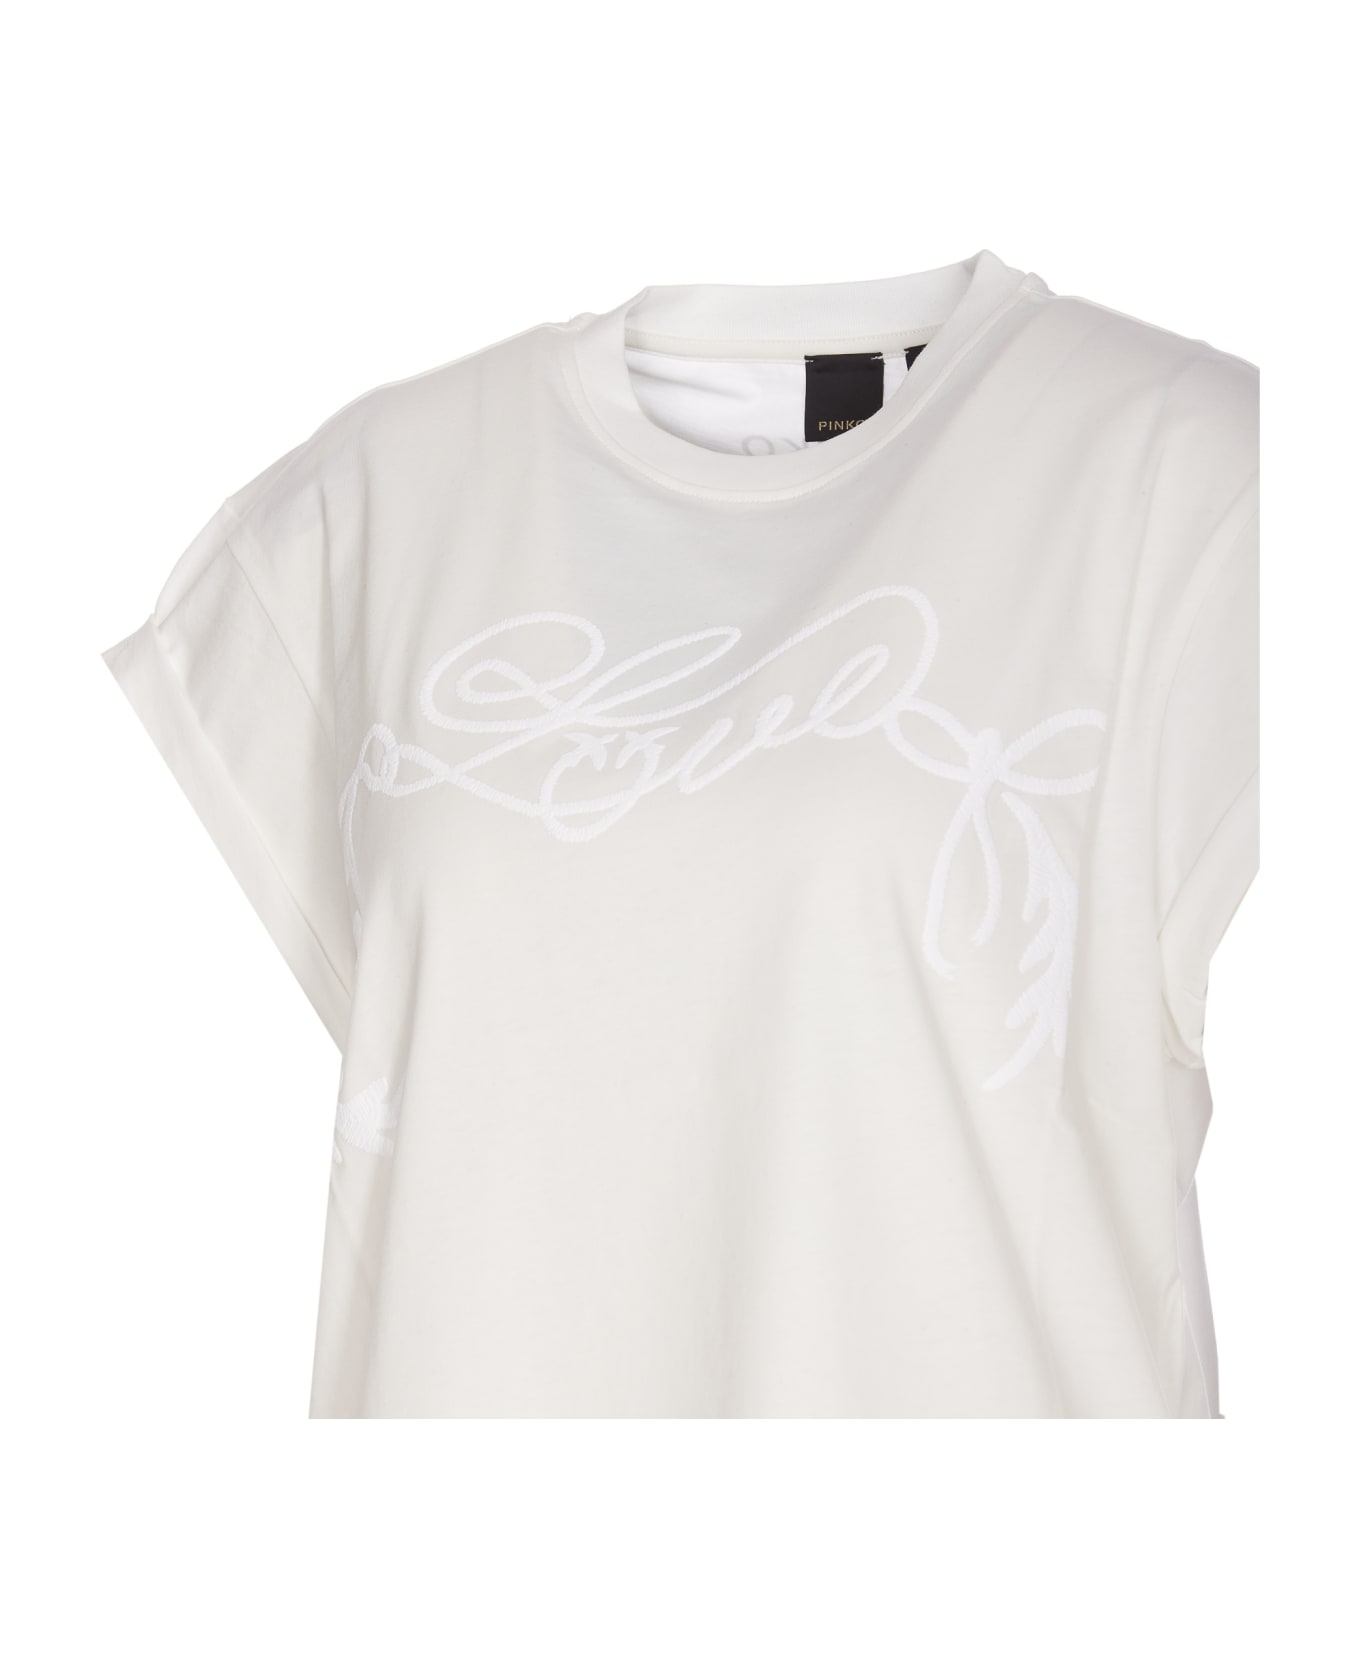 Pinko Telesto T-shirt - Bianco Tシャツ